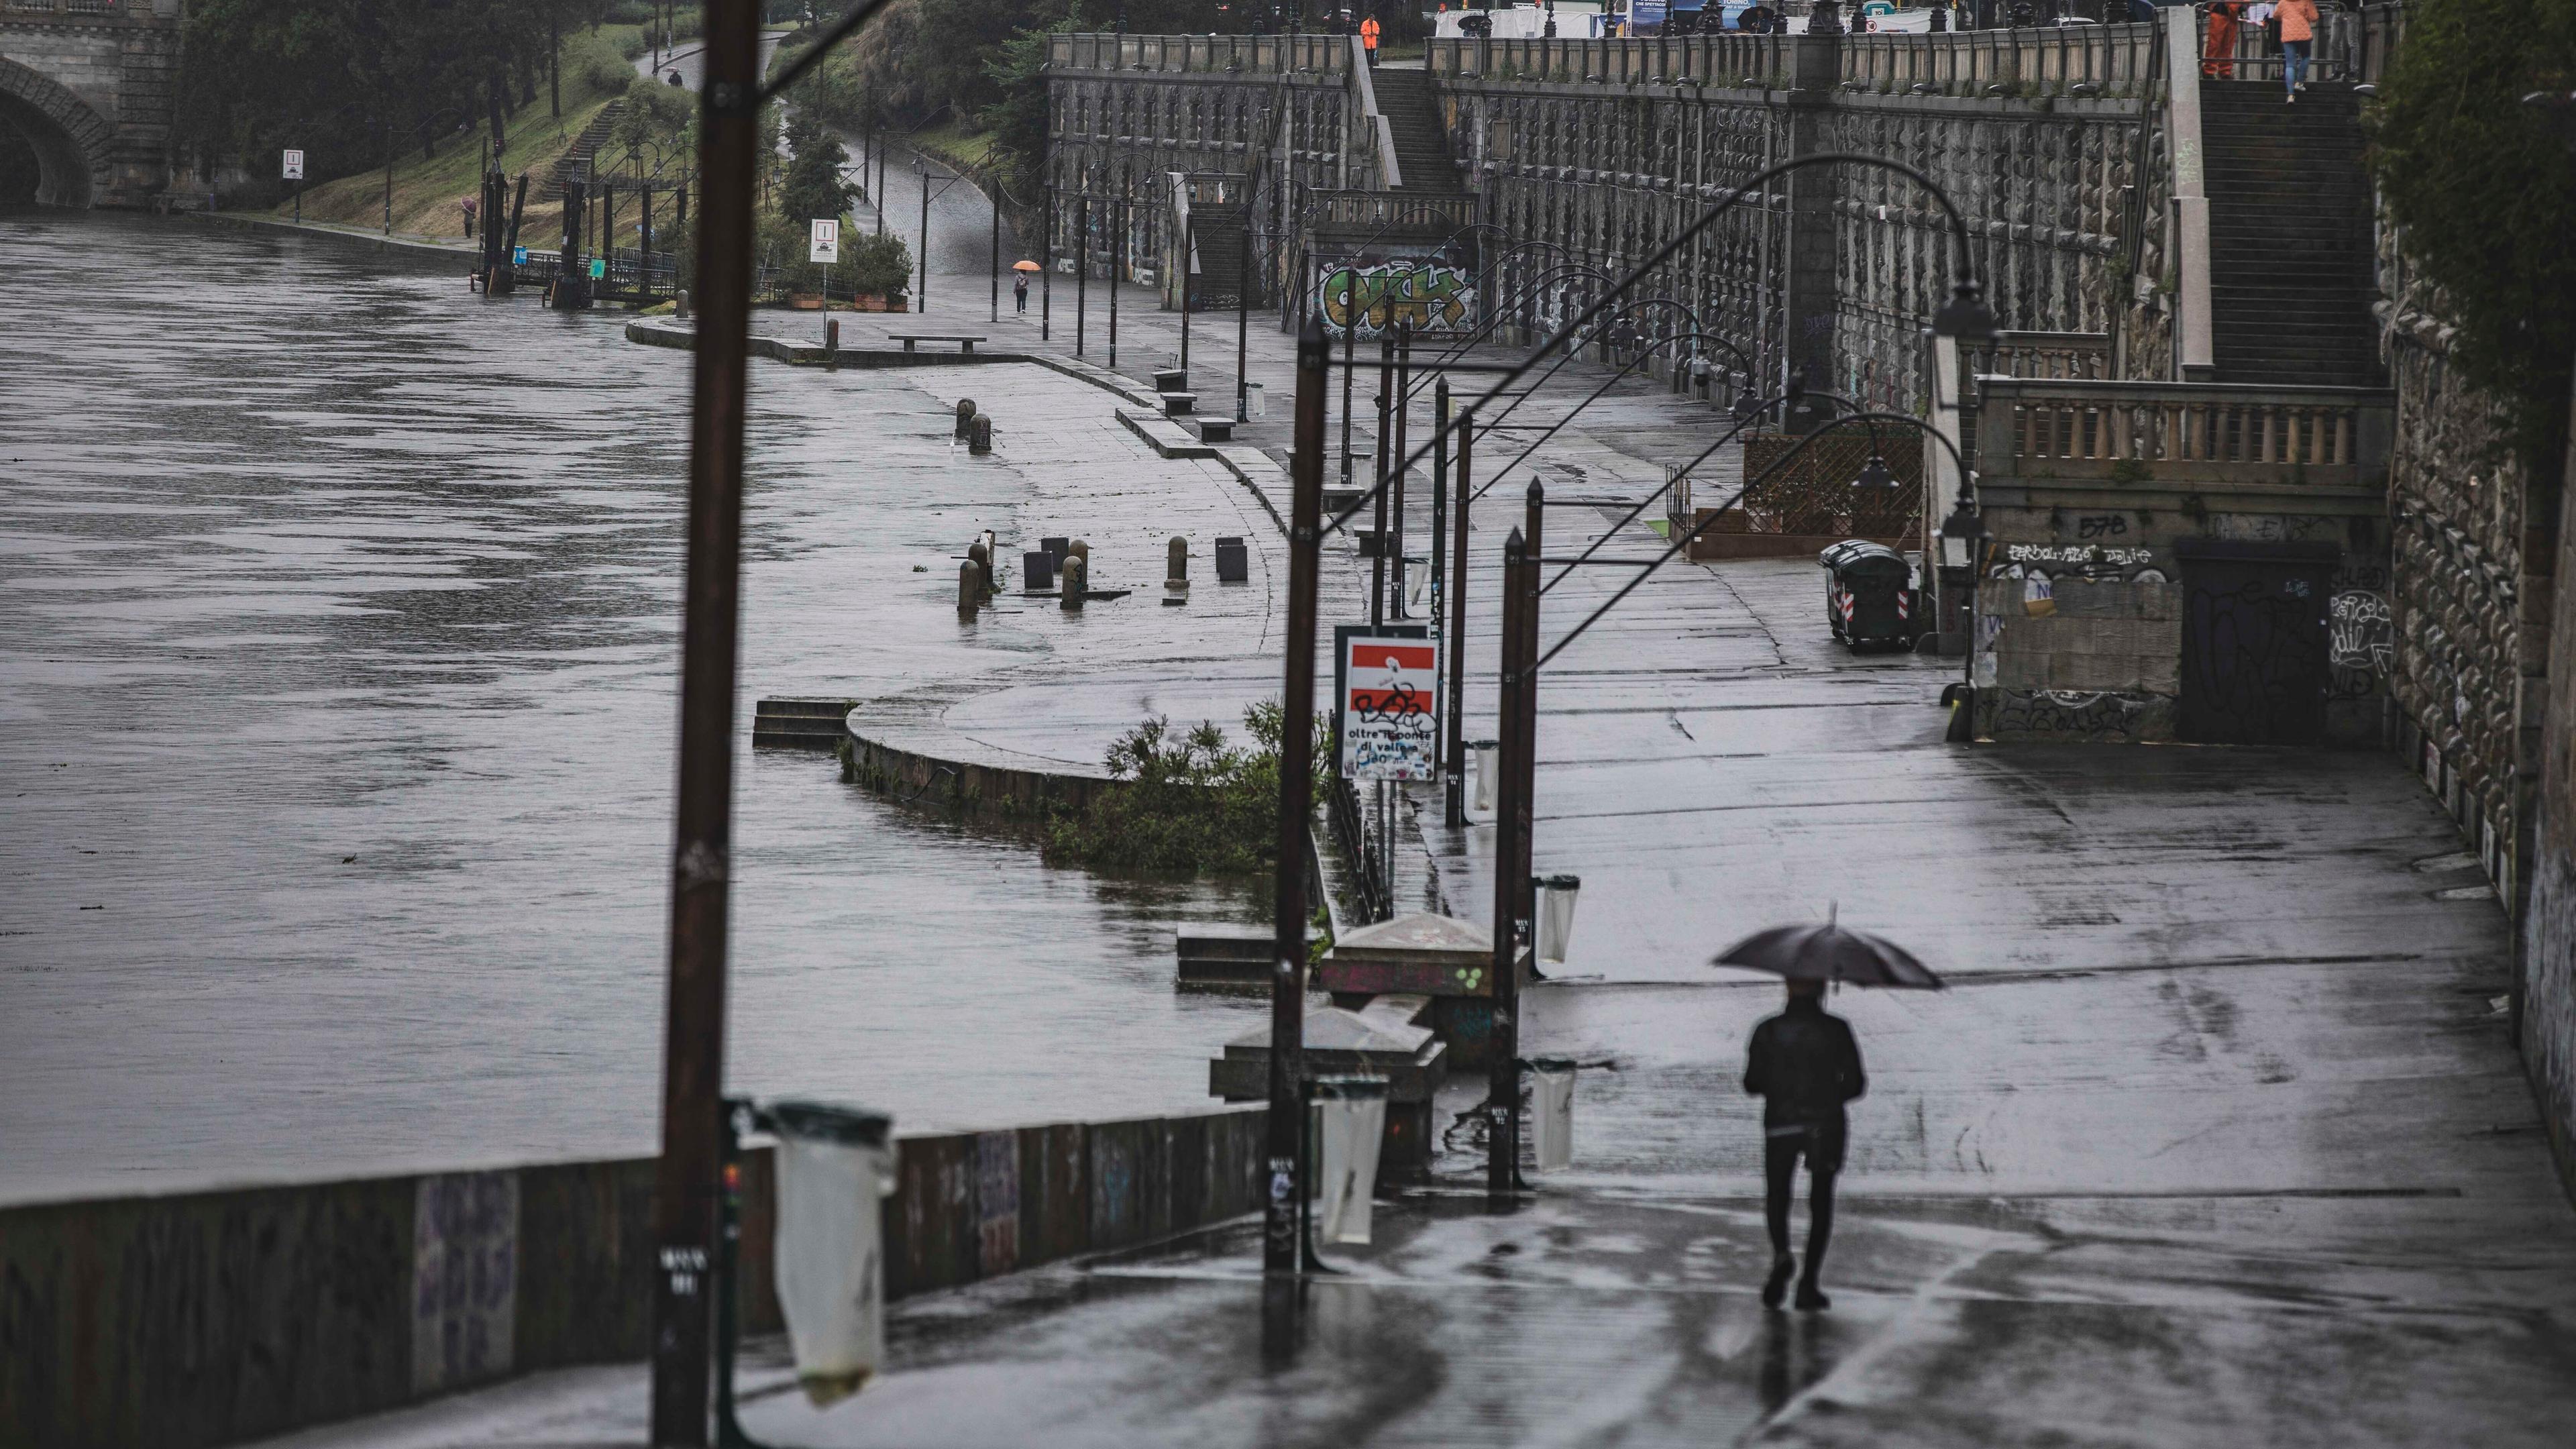 Eine Straße, daneben der Fluss Po. Die Straße steht stark unter Wasser, das Wasser im Fluss steht extrem hoch. Auf der Straße geht ein mann mit einem Regenschirm.